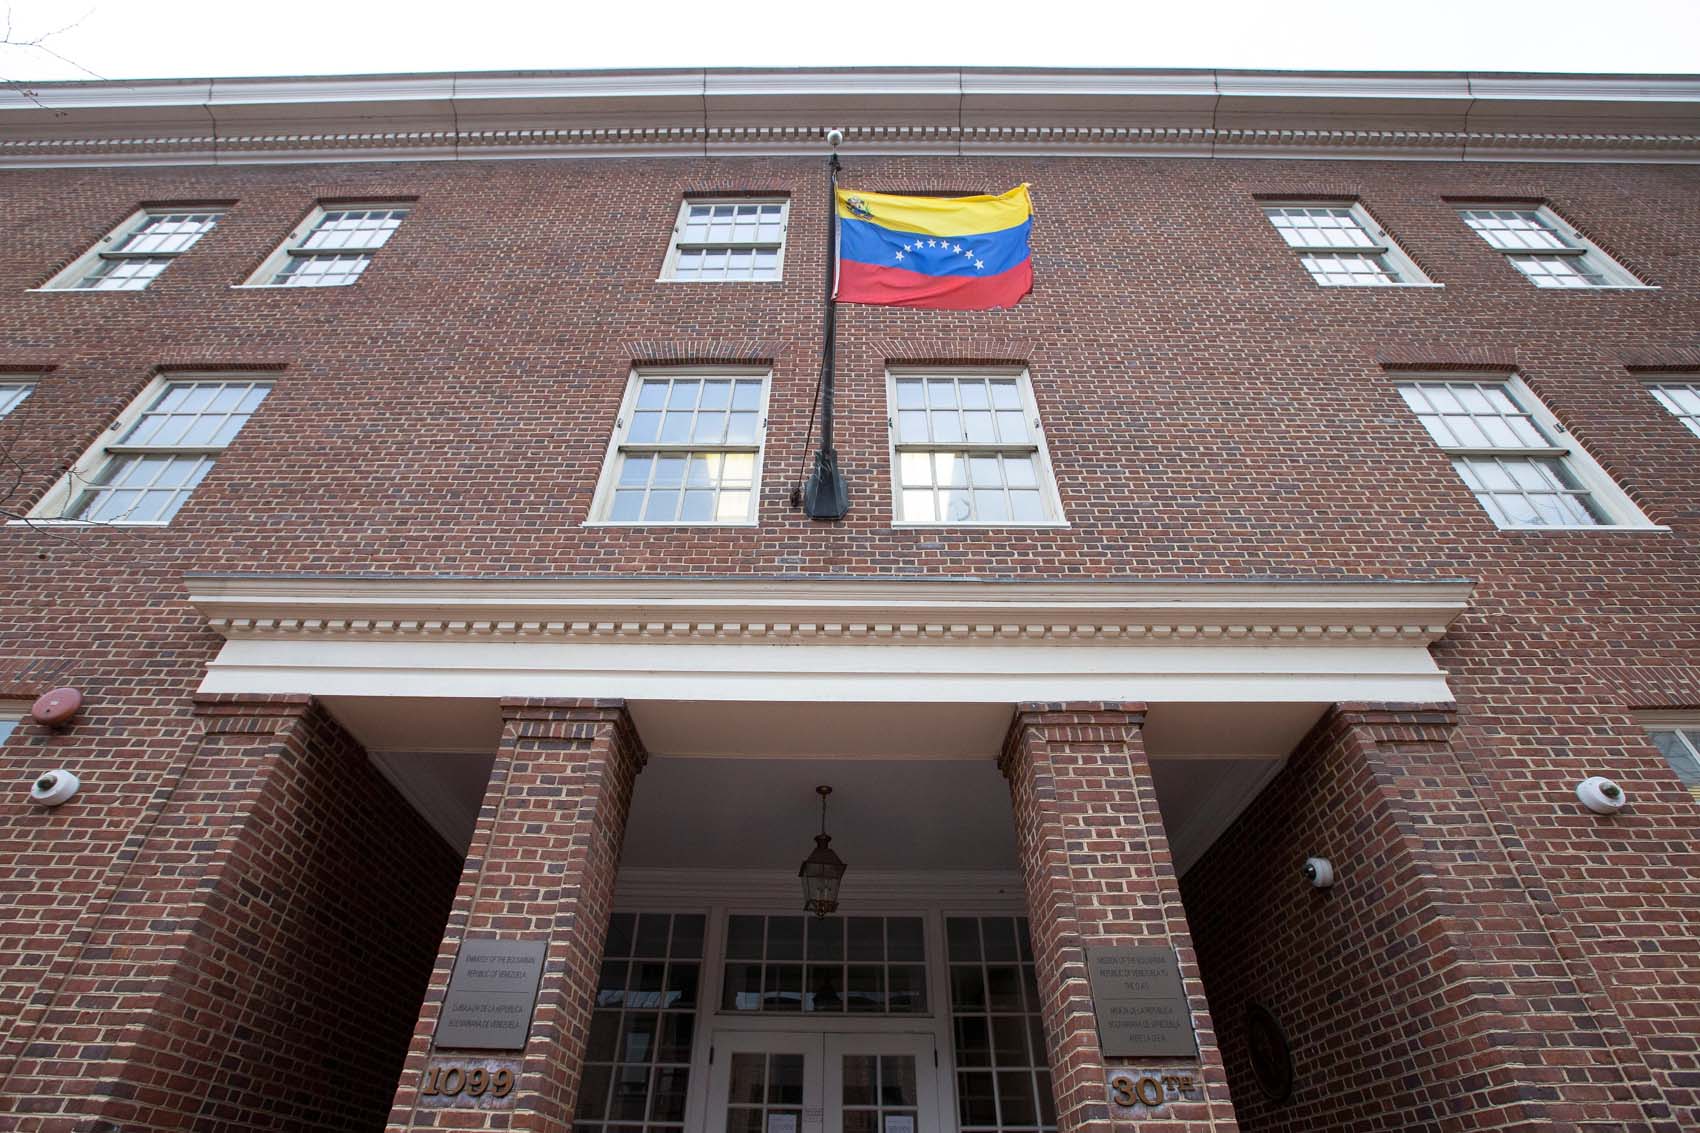 El presidente interino asumirá el control de las embajadas y consulados venezolanos en EEUU